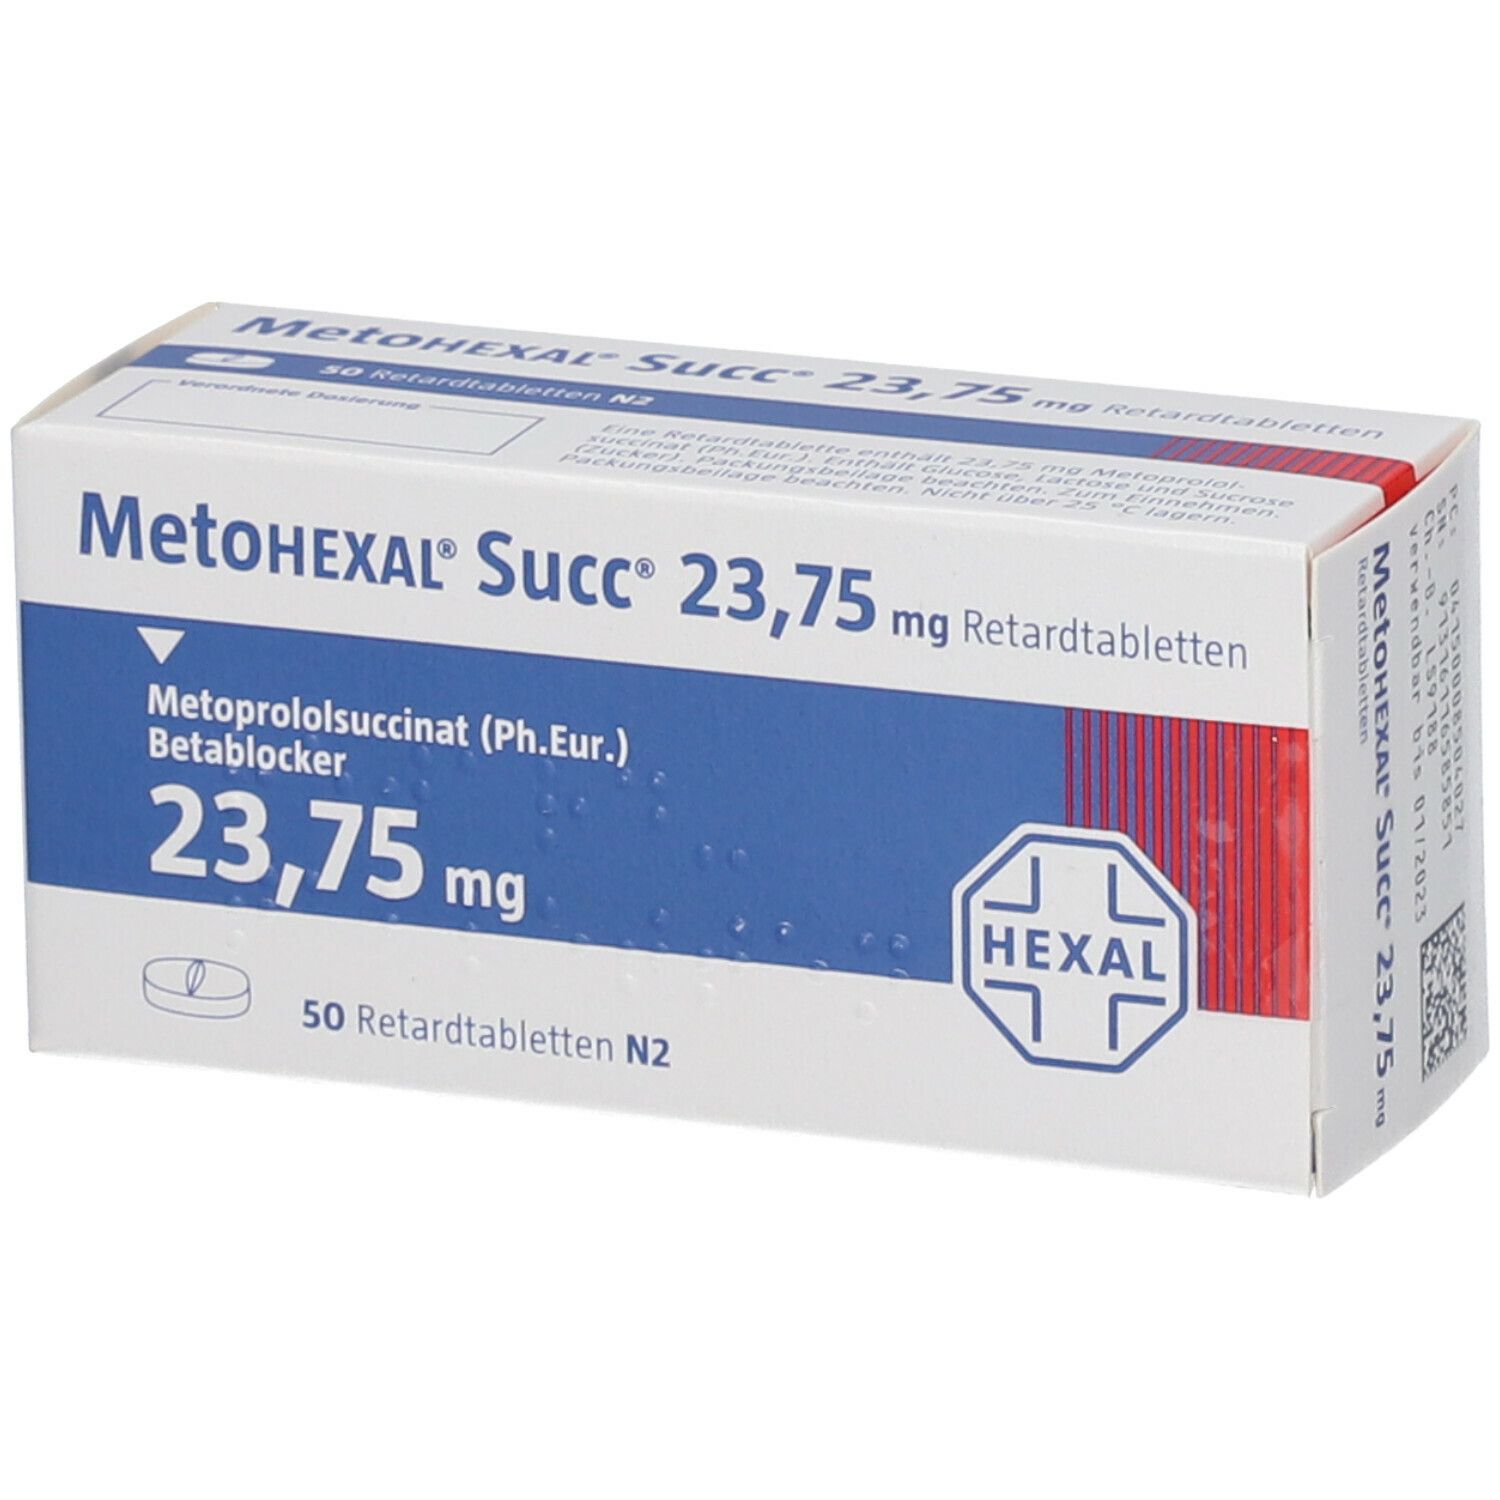 MetoHEXAL® Succ® 23,75 mg